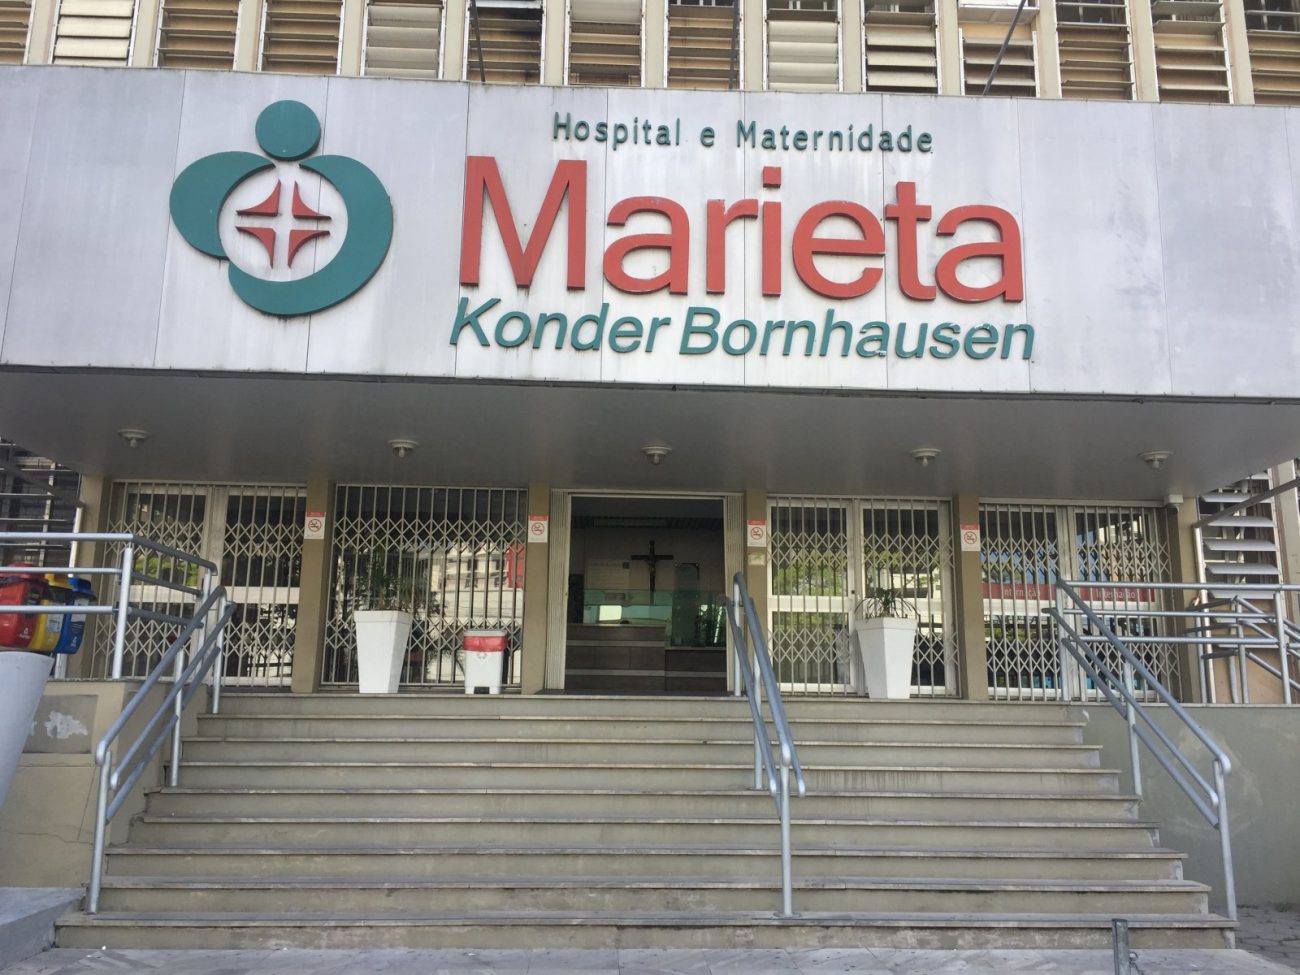 Maria Salete Alves Brito, de 63 anos, era moradora do bairro Cordeiros, em Itajaí. Ela faleceu no dia 7 de junho, em decorrência da infecção por Covid-19. Brito estava internada desde o dia 21 de maio no Hospital Marieta. Ela era ex-tabagista. - Hospital Marieta Konder Bornhausen/Divulgação